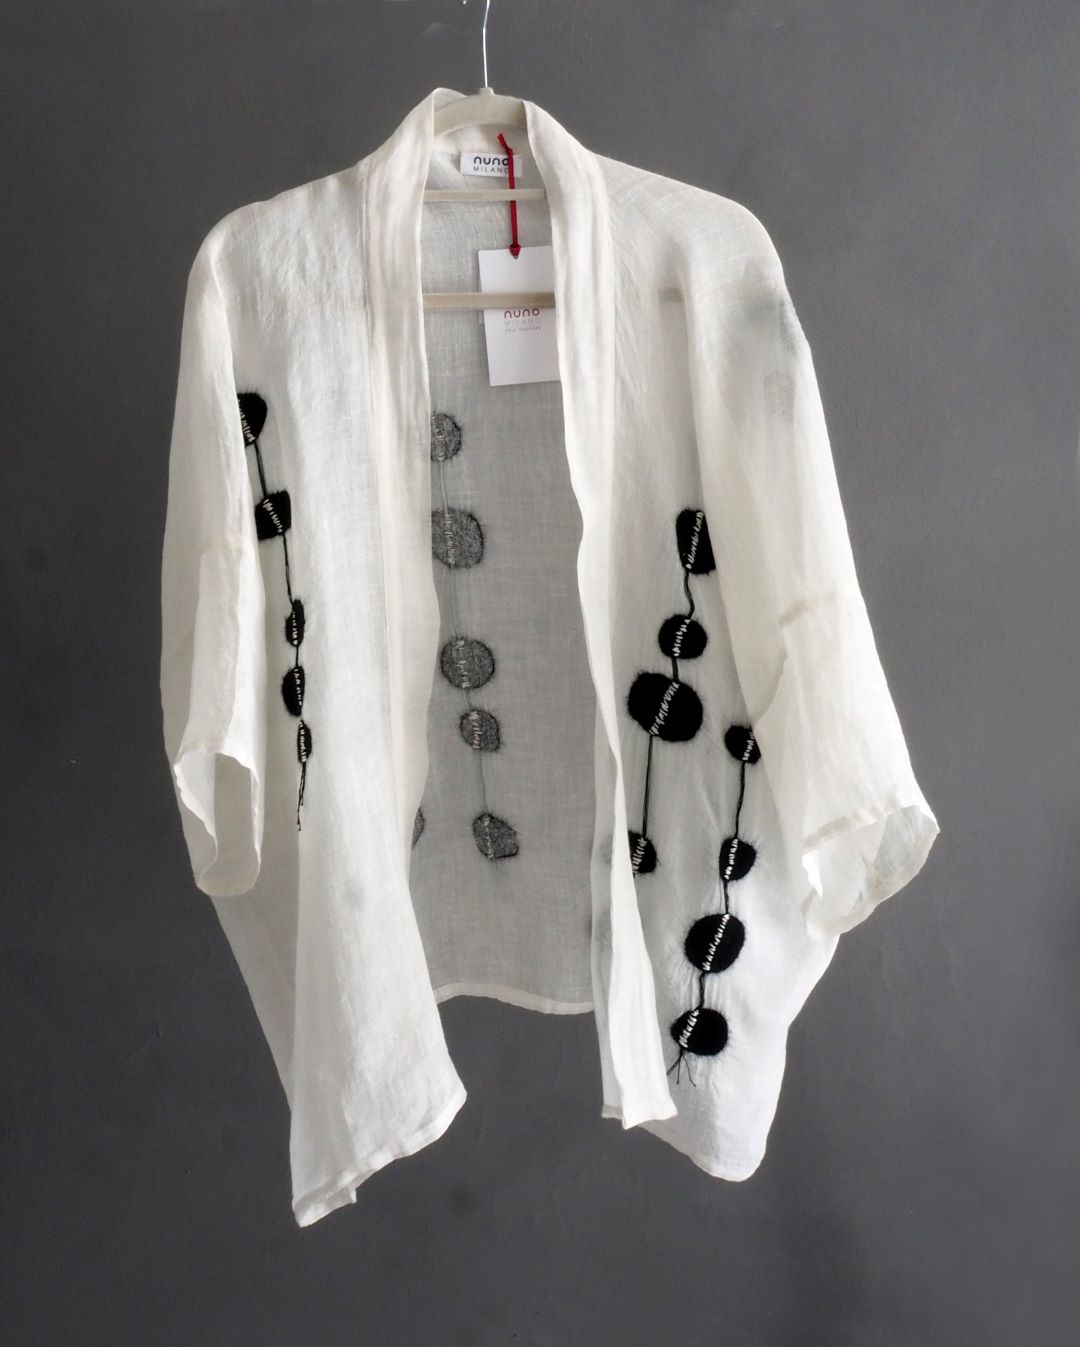 giacca kimono bianca con disegno in nunofeltro nero appesa